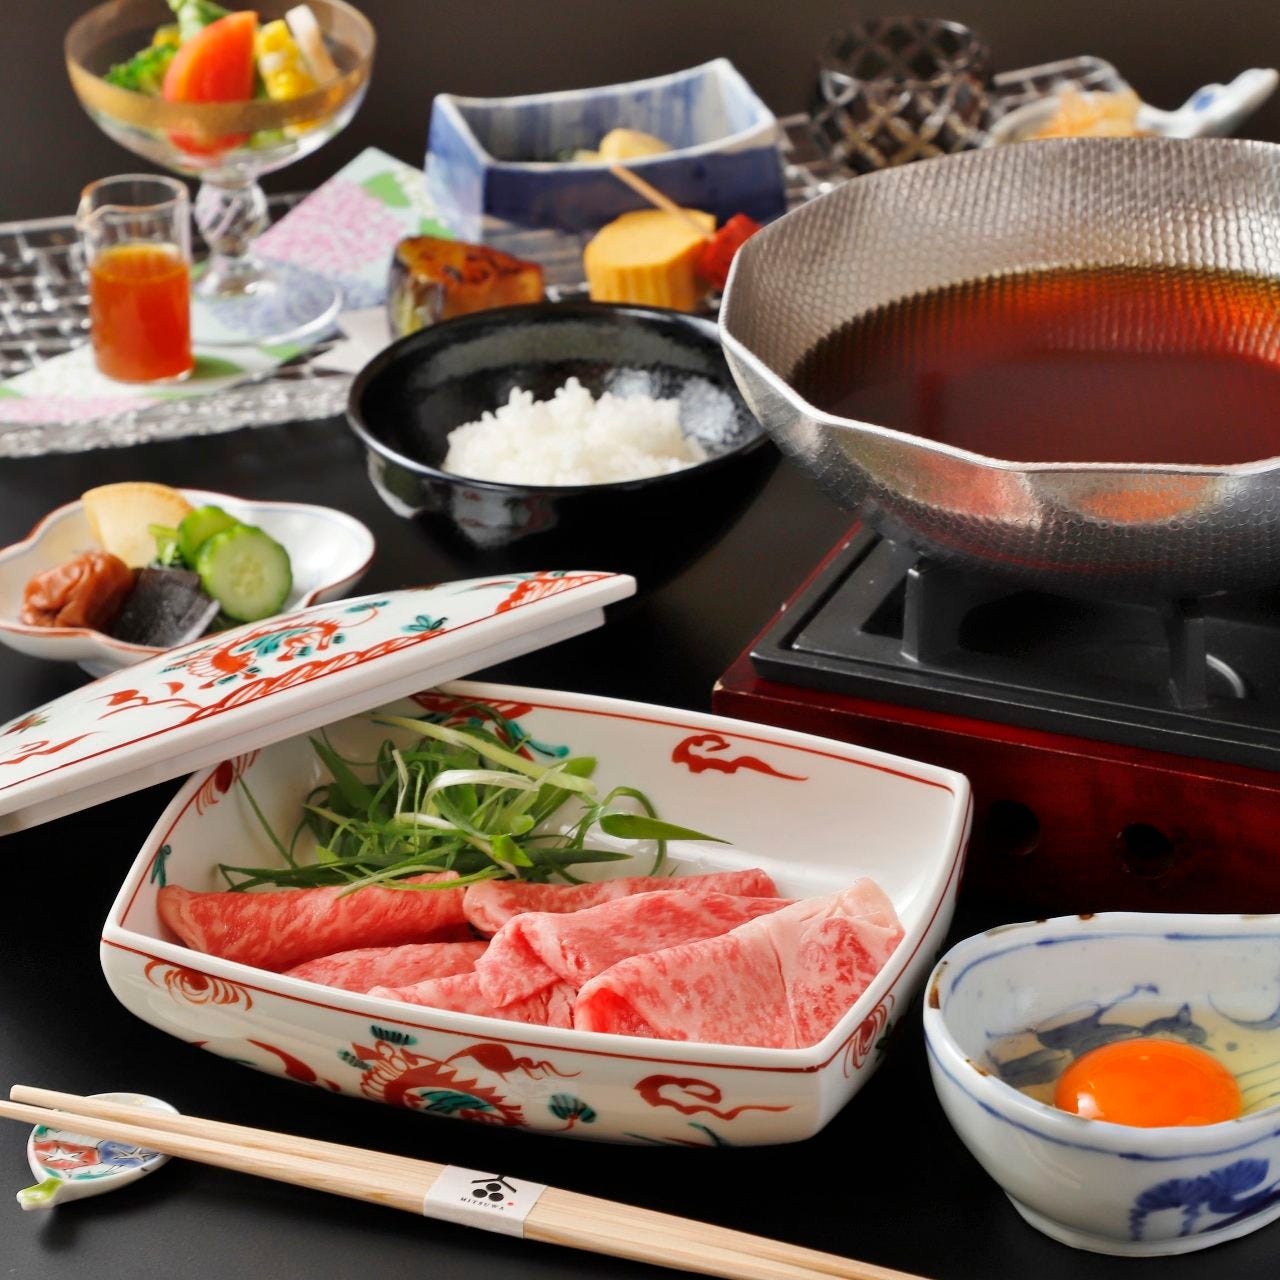 接待や会食など特別な日に
日本料理みつわで至福のひとときを